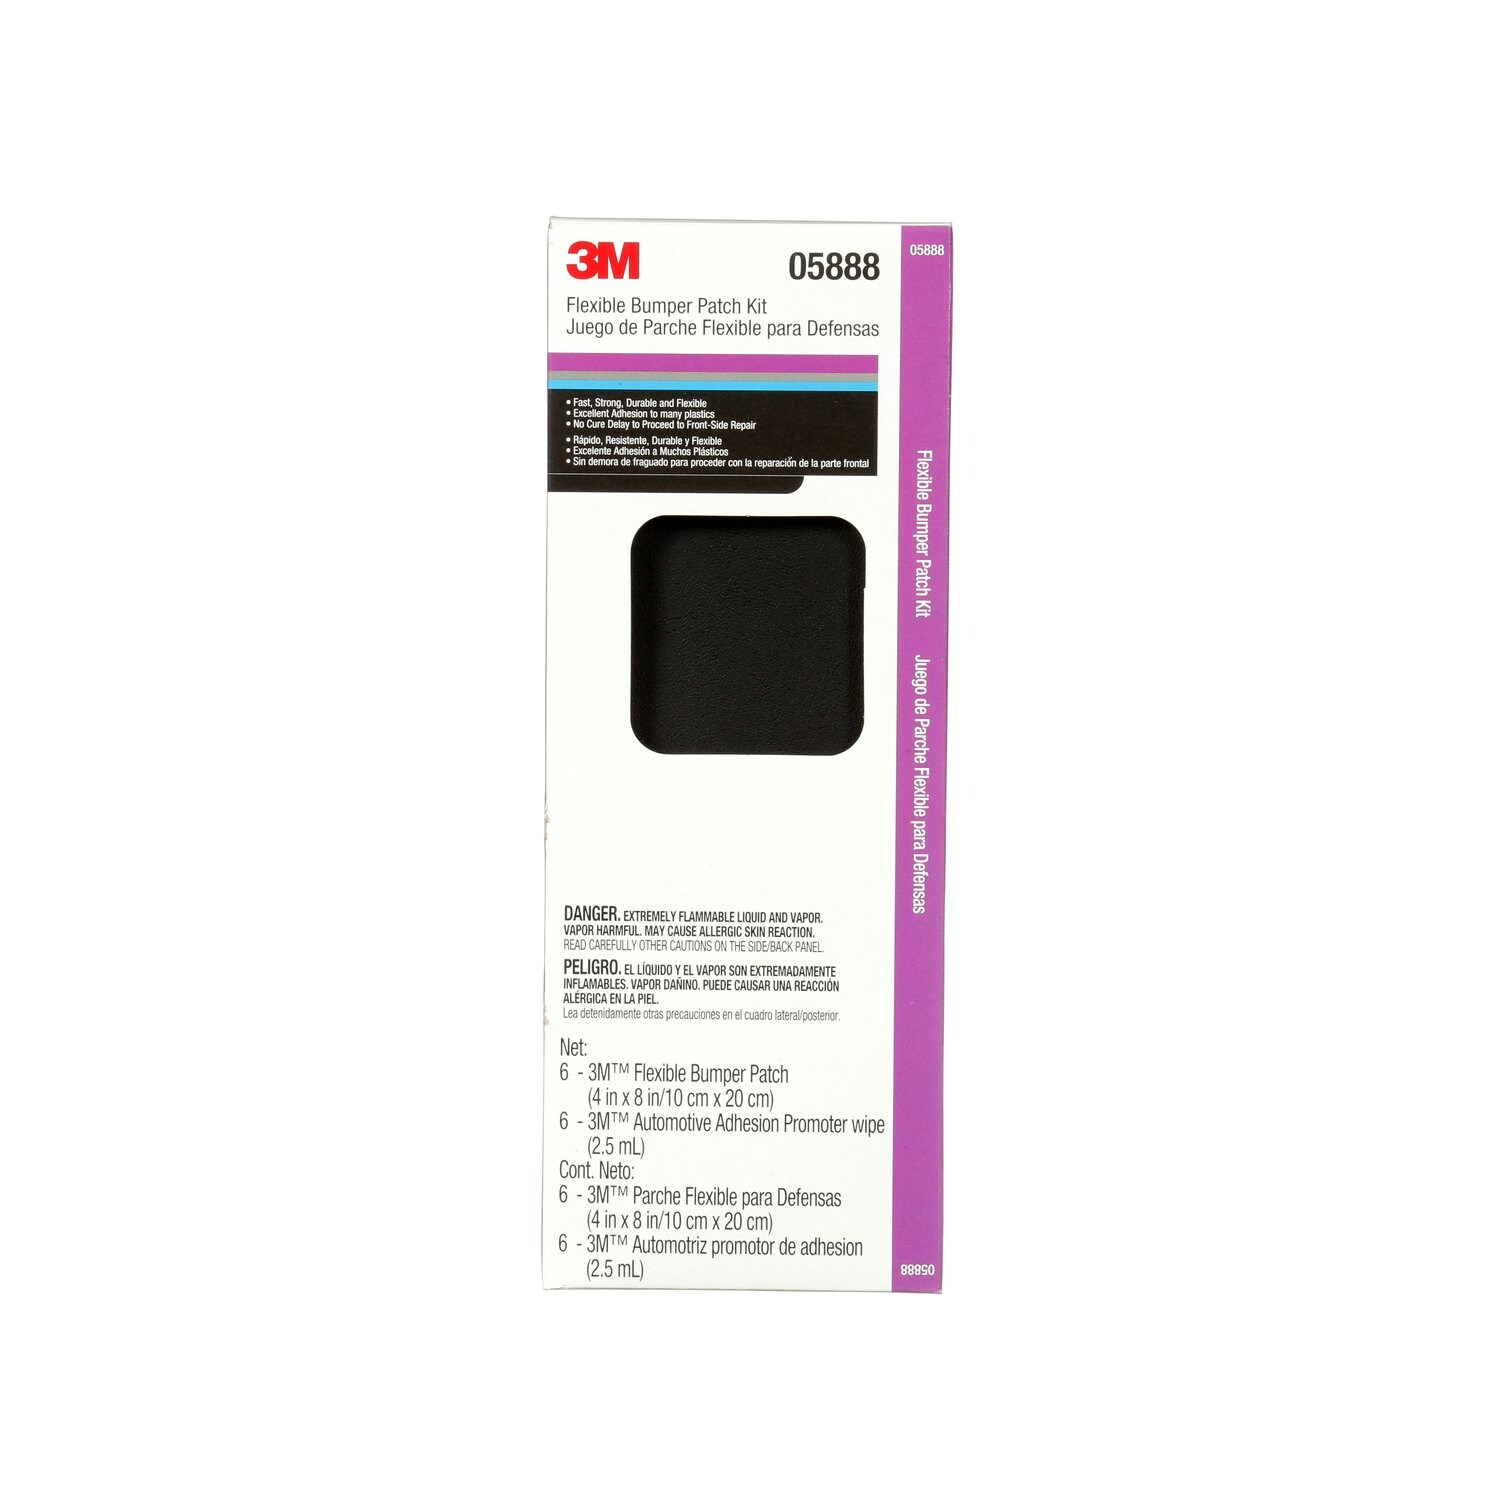 7000045602 - 3M Flexible Bumper Patch Kit, 05888, Black, 4 in x 8 in, 1 per case